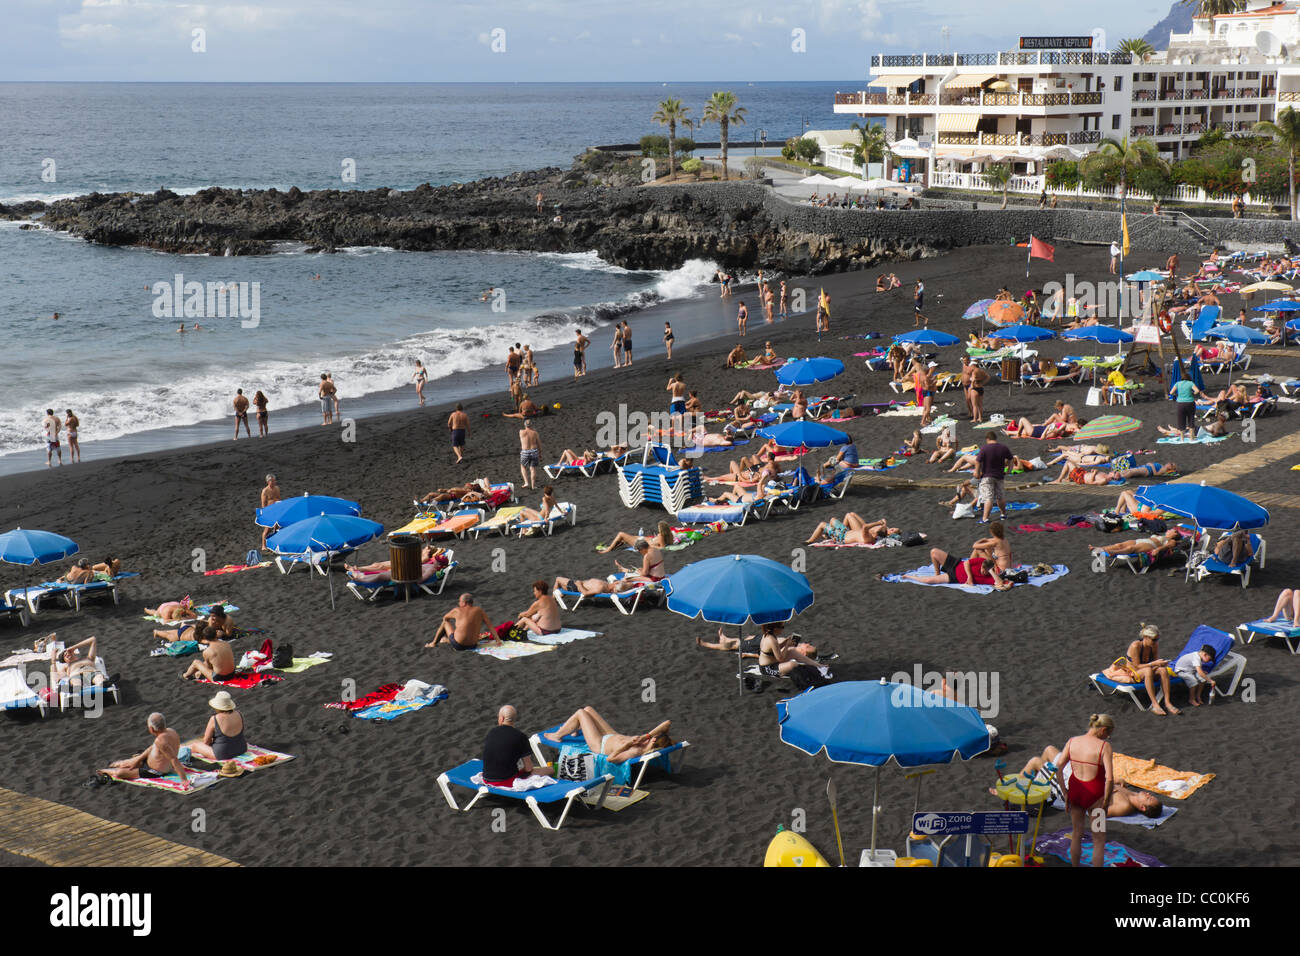 Playa de arena, Puerto de Santiago, Tenerife - playa de arena de lava negra  Fotografía de stock - Alamy